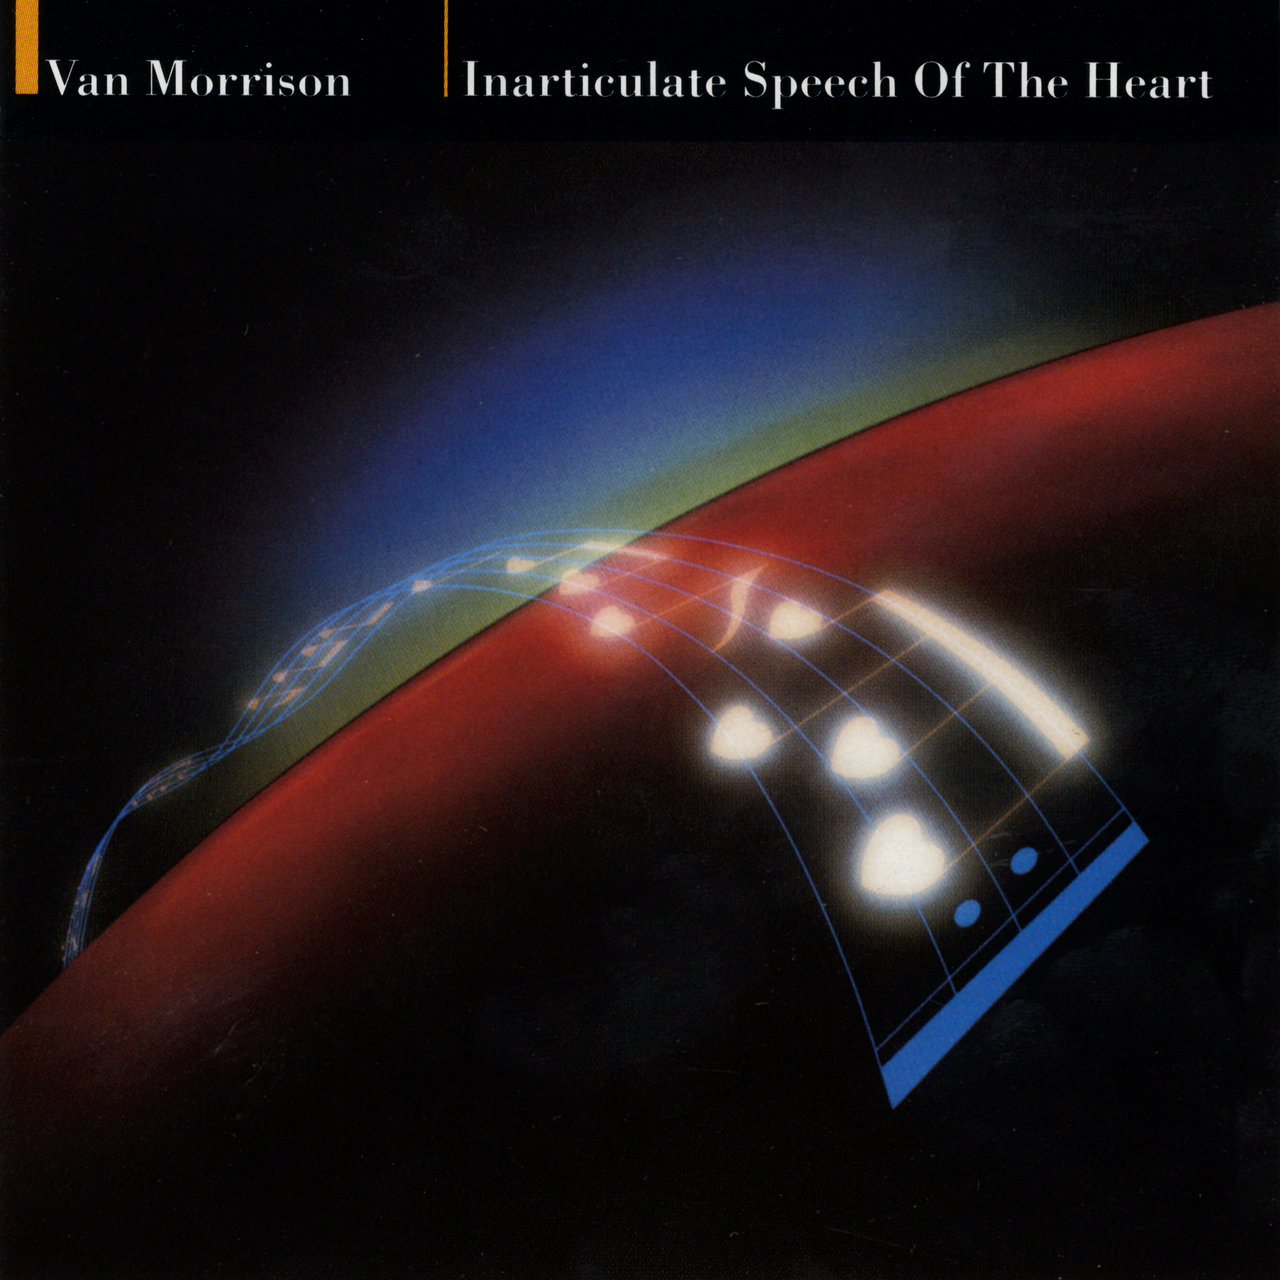 Van Morrison 2013 - Inarticulate Speech Of The Heart 24bit 96KHz FLAC